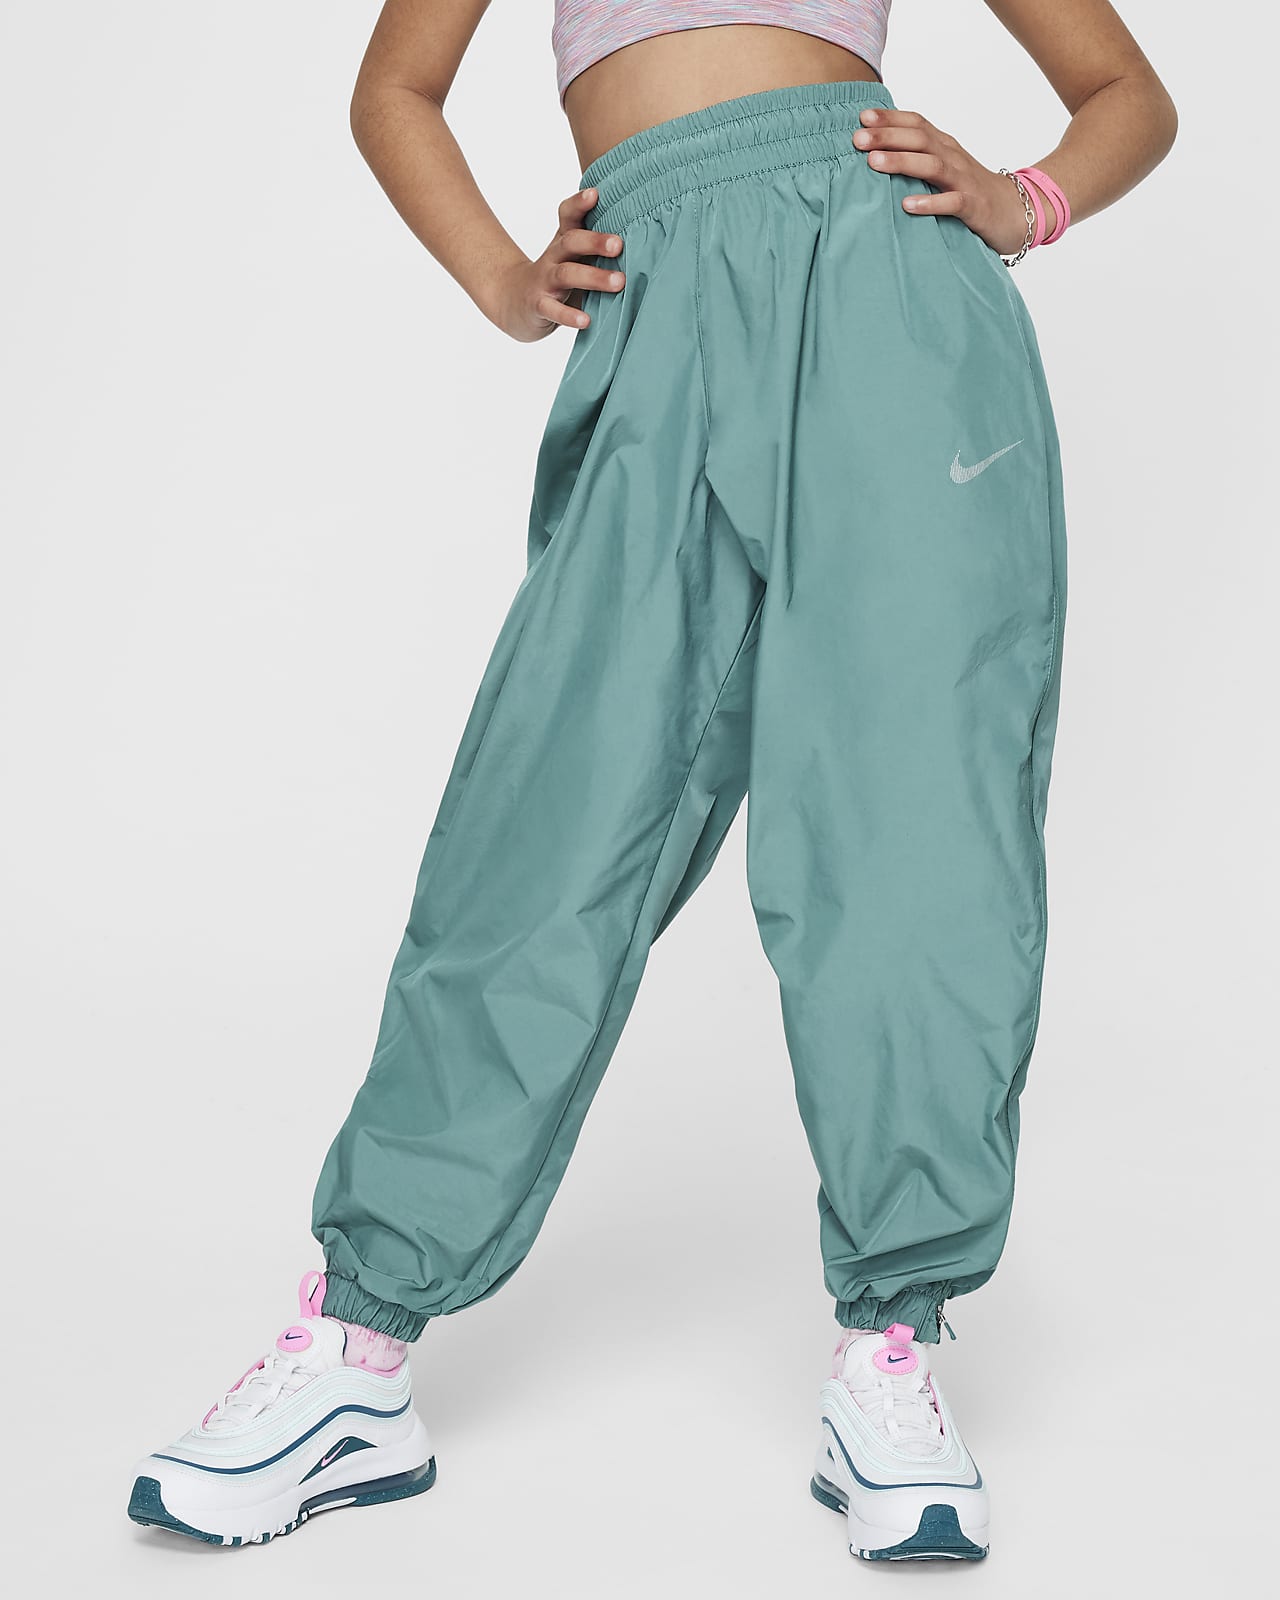 Pantaloni in tessuto Nike Sportswear – Ragazza